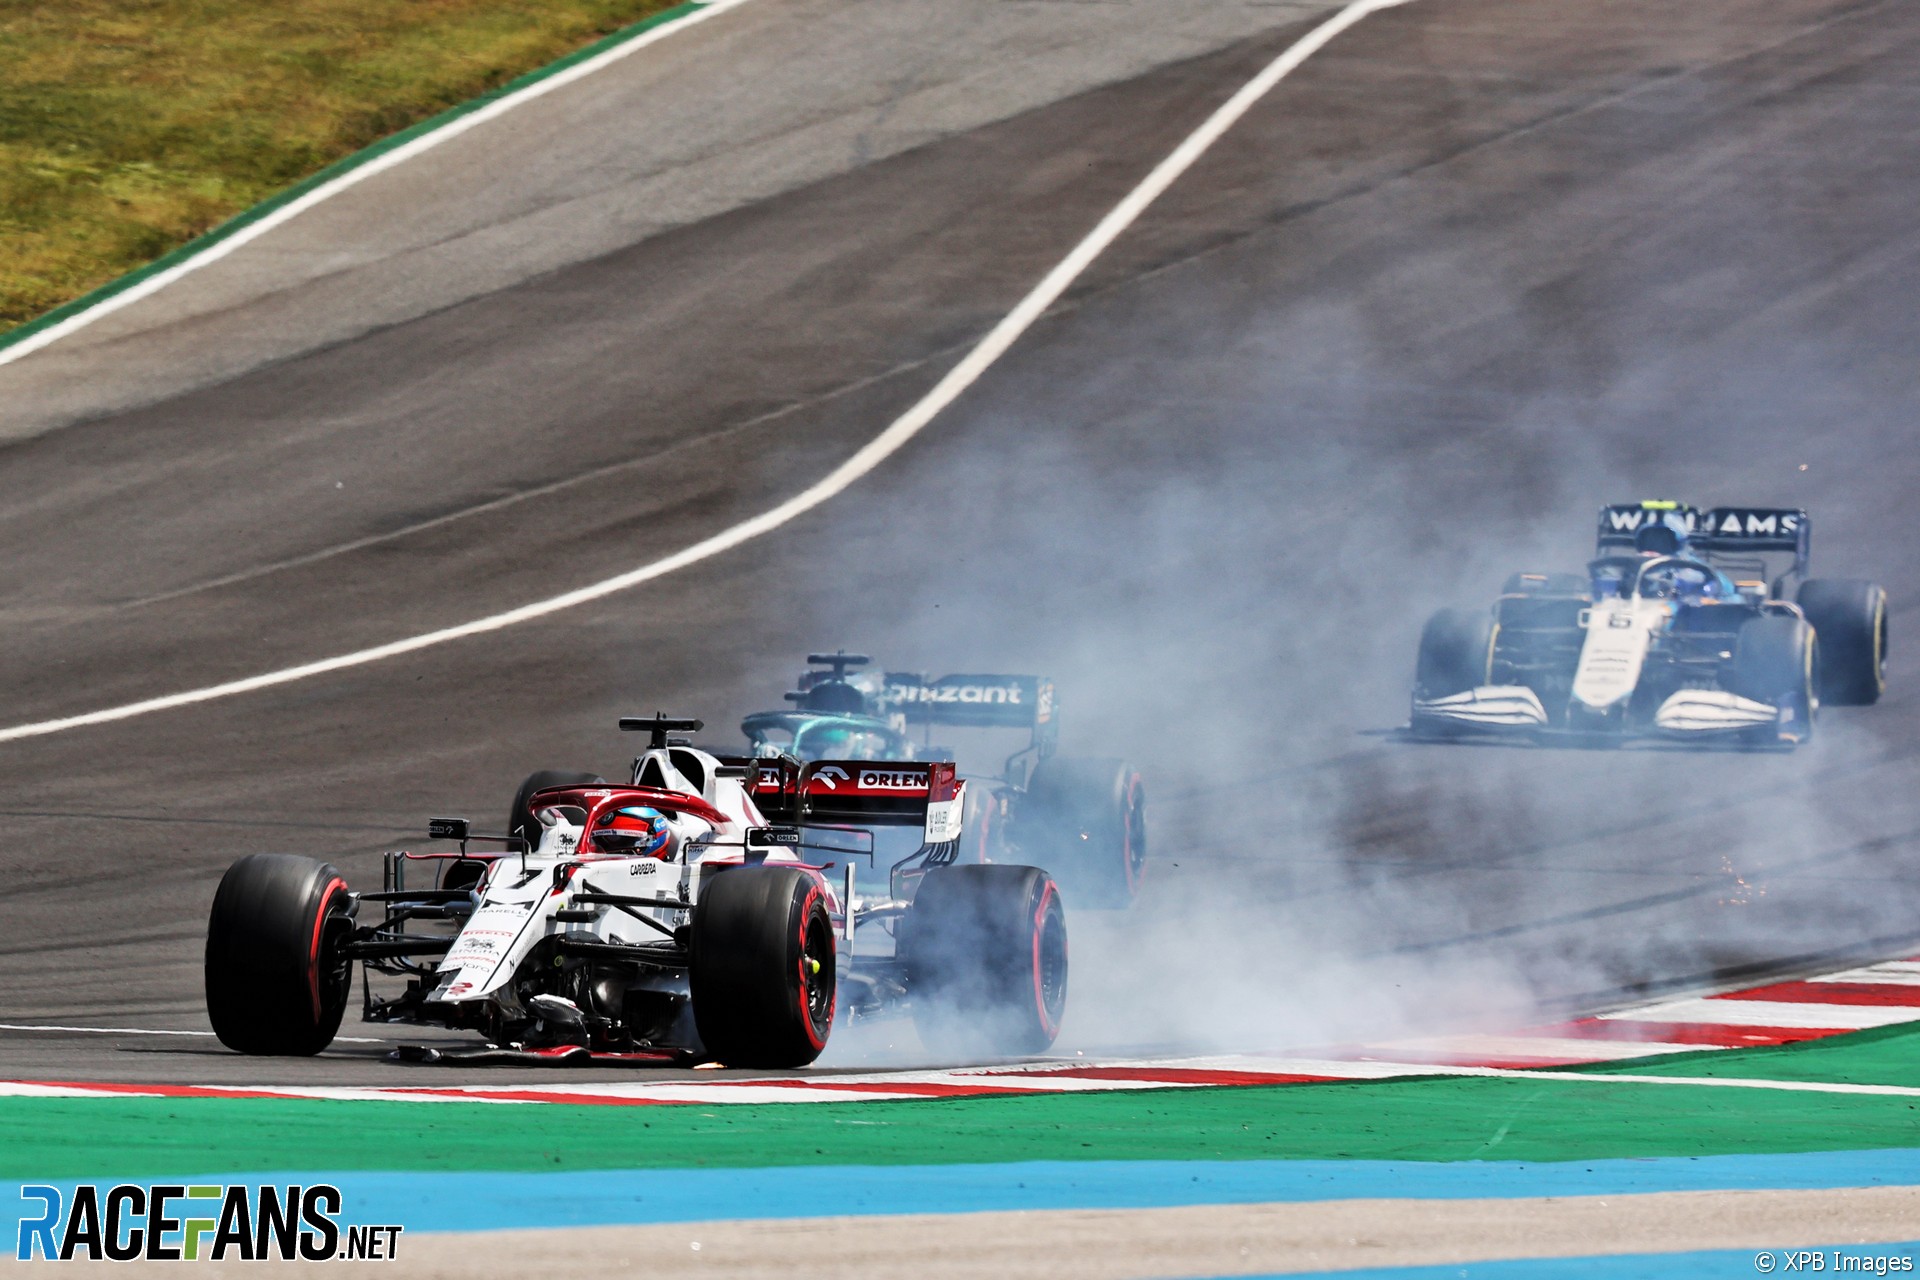 2021 Portuguese Grand Prix in pictures